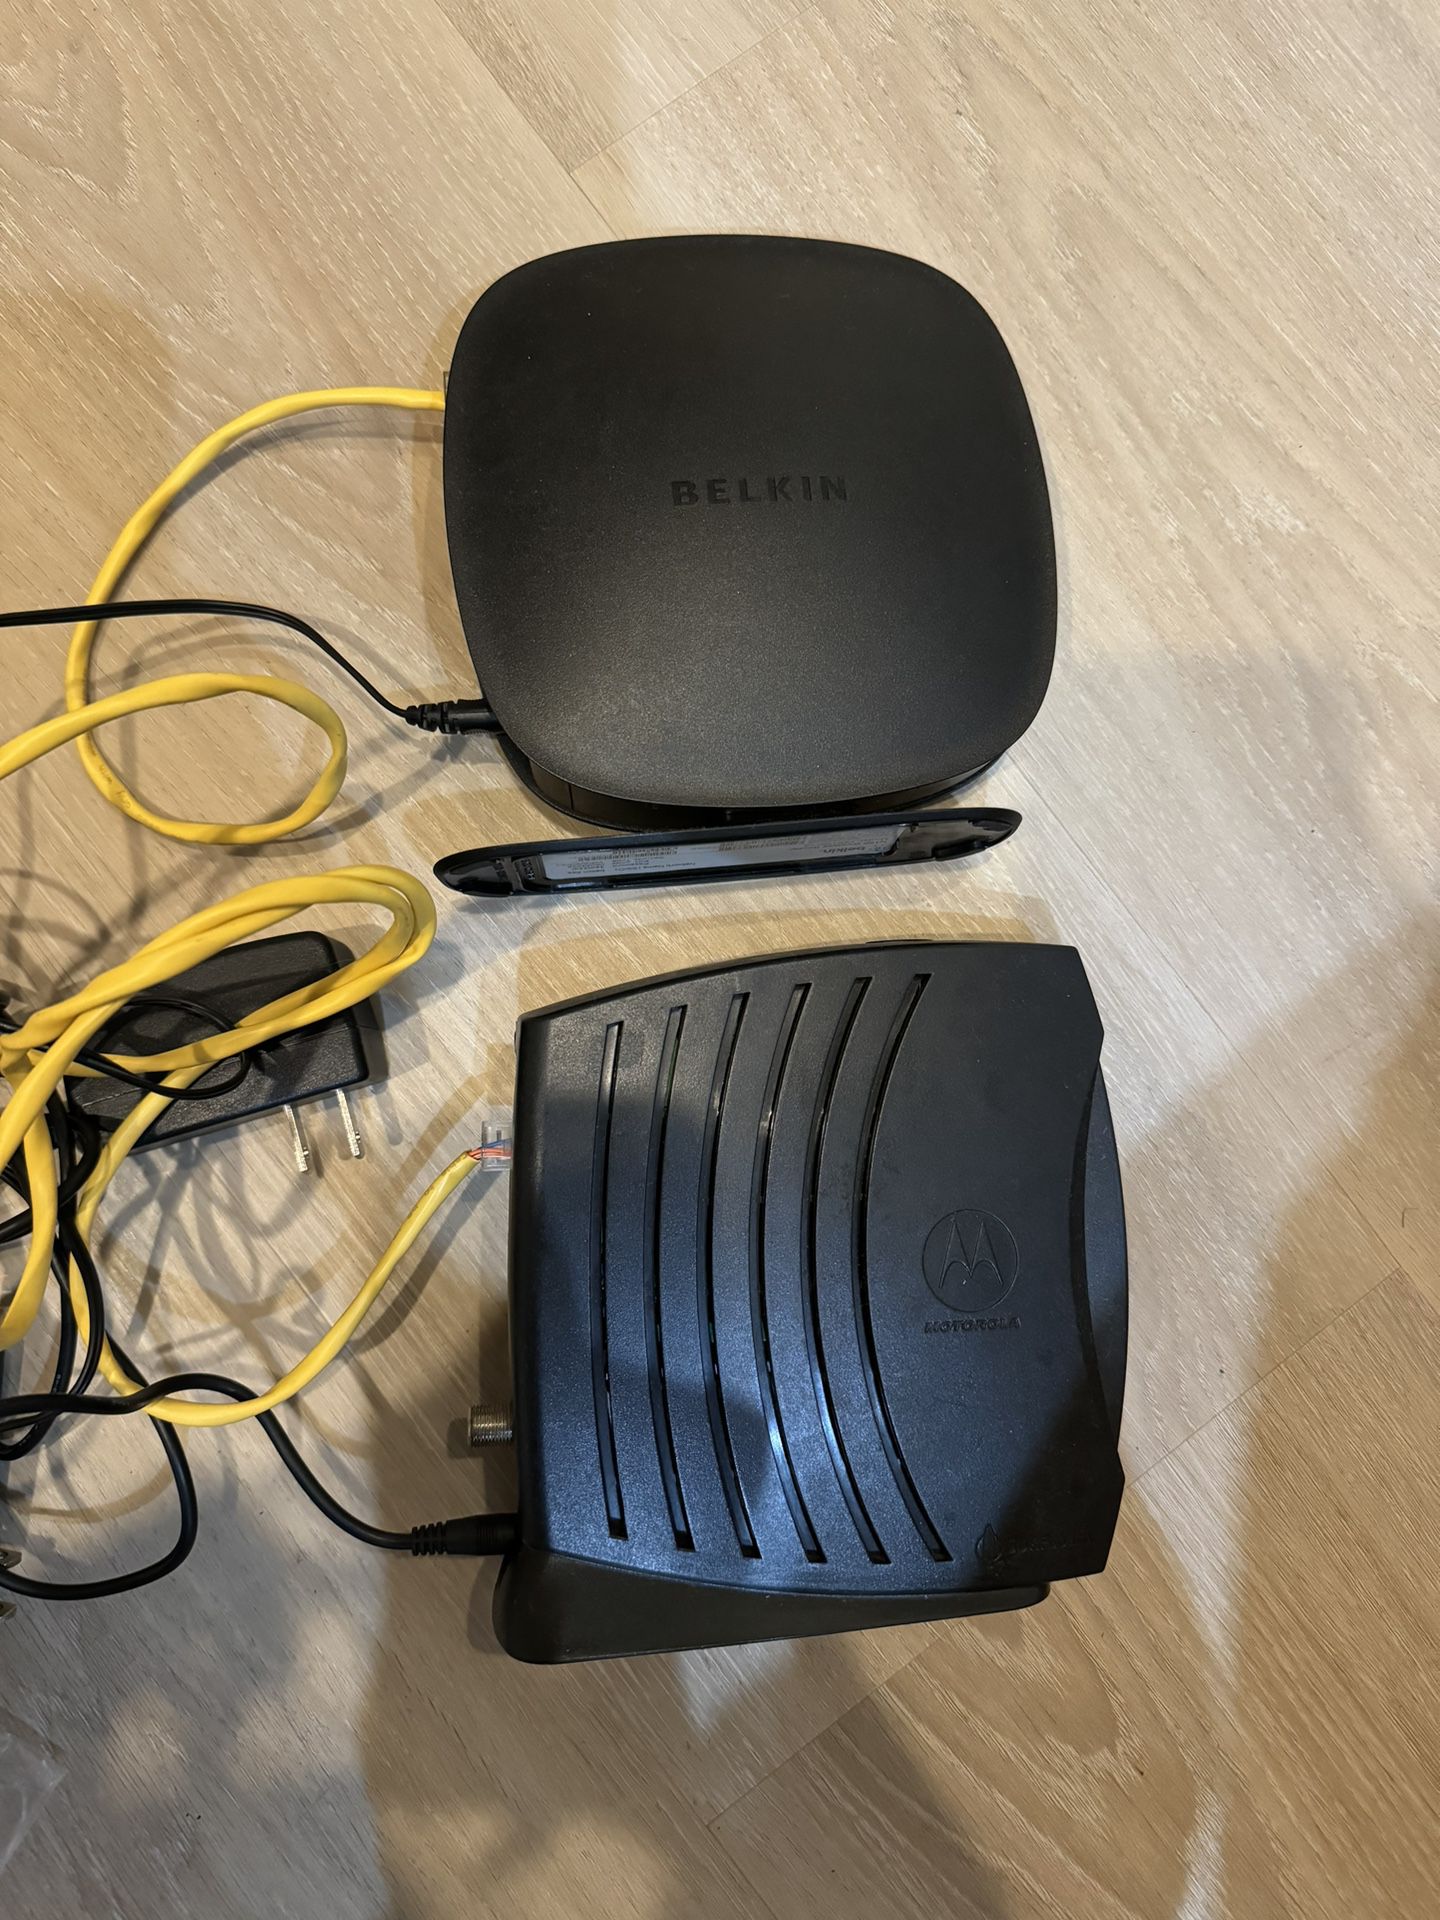 Belkin router N150/ Motorola modem SB5101